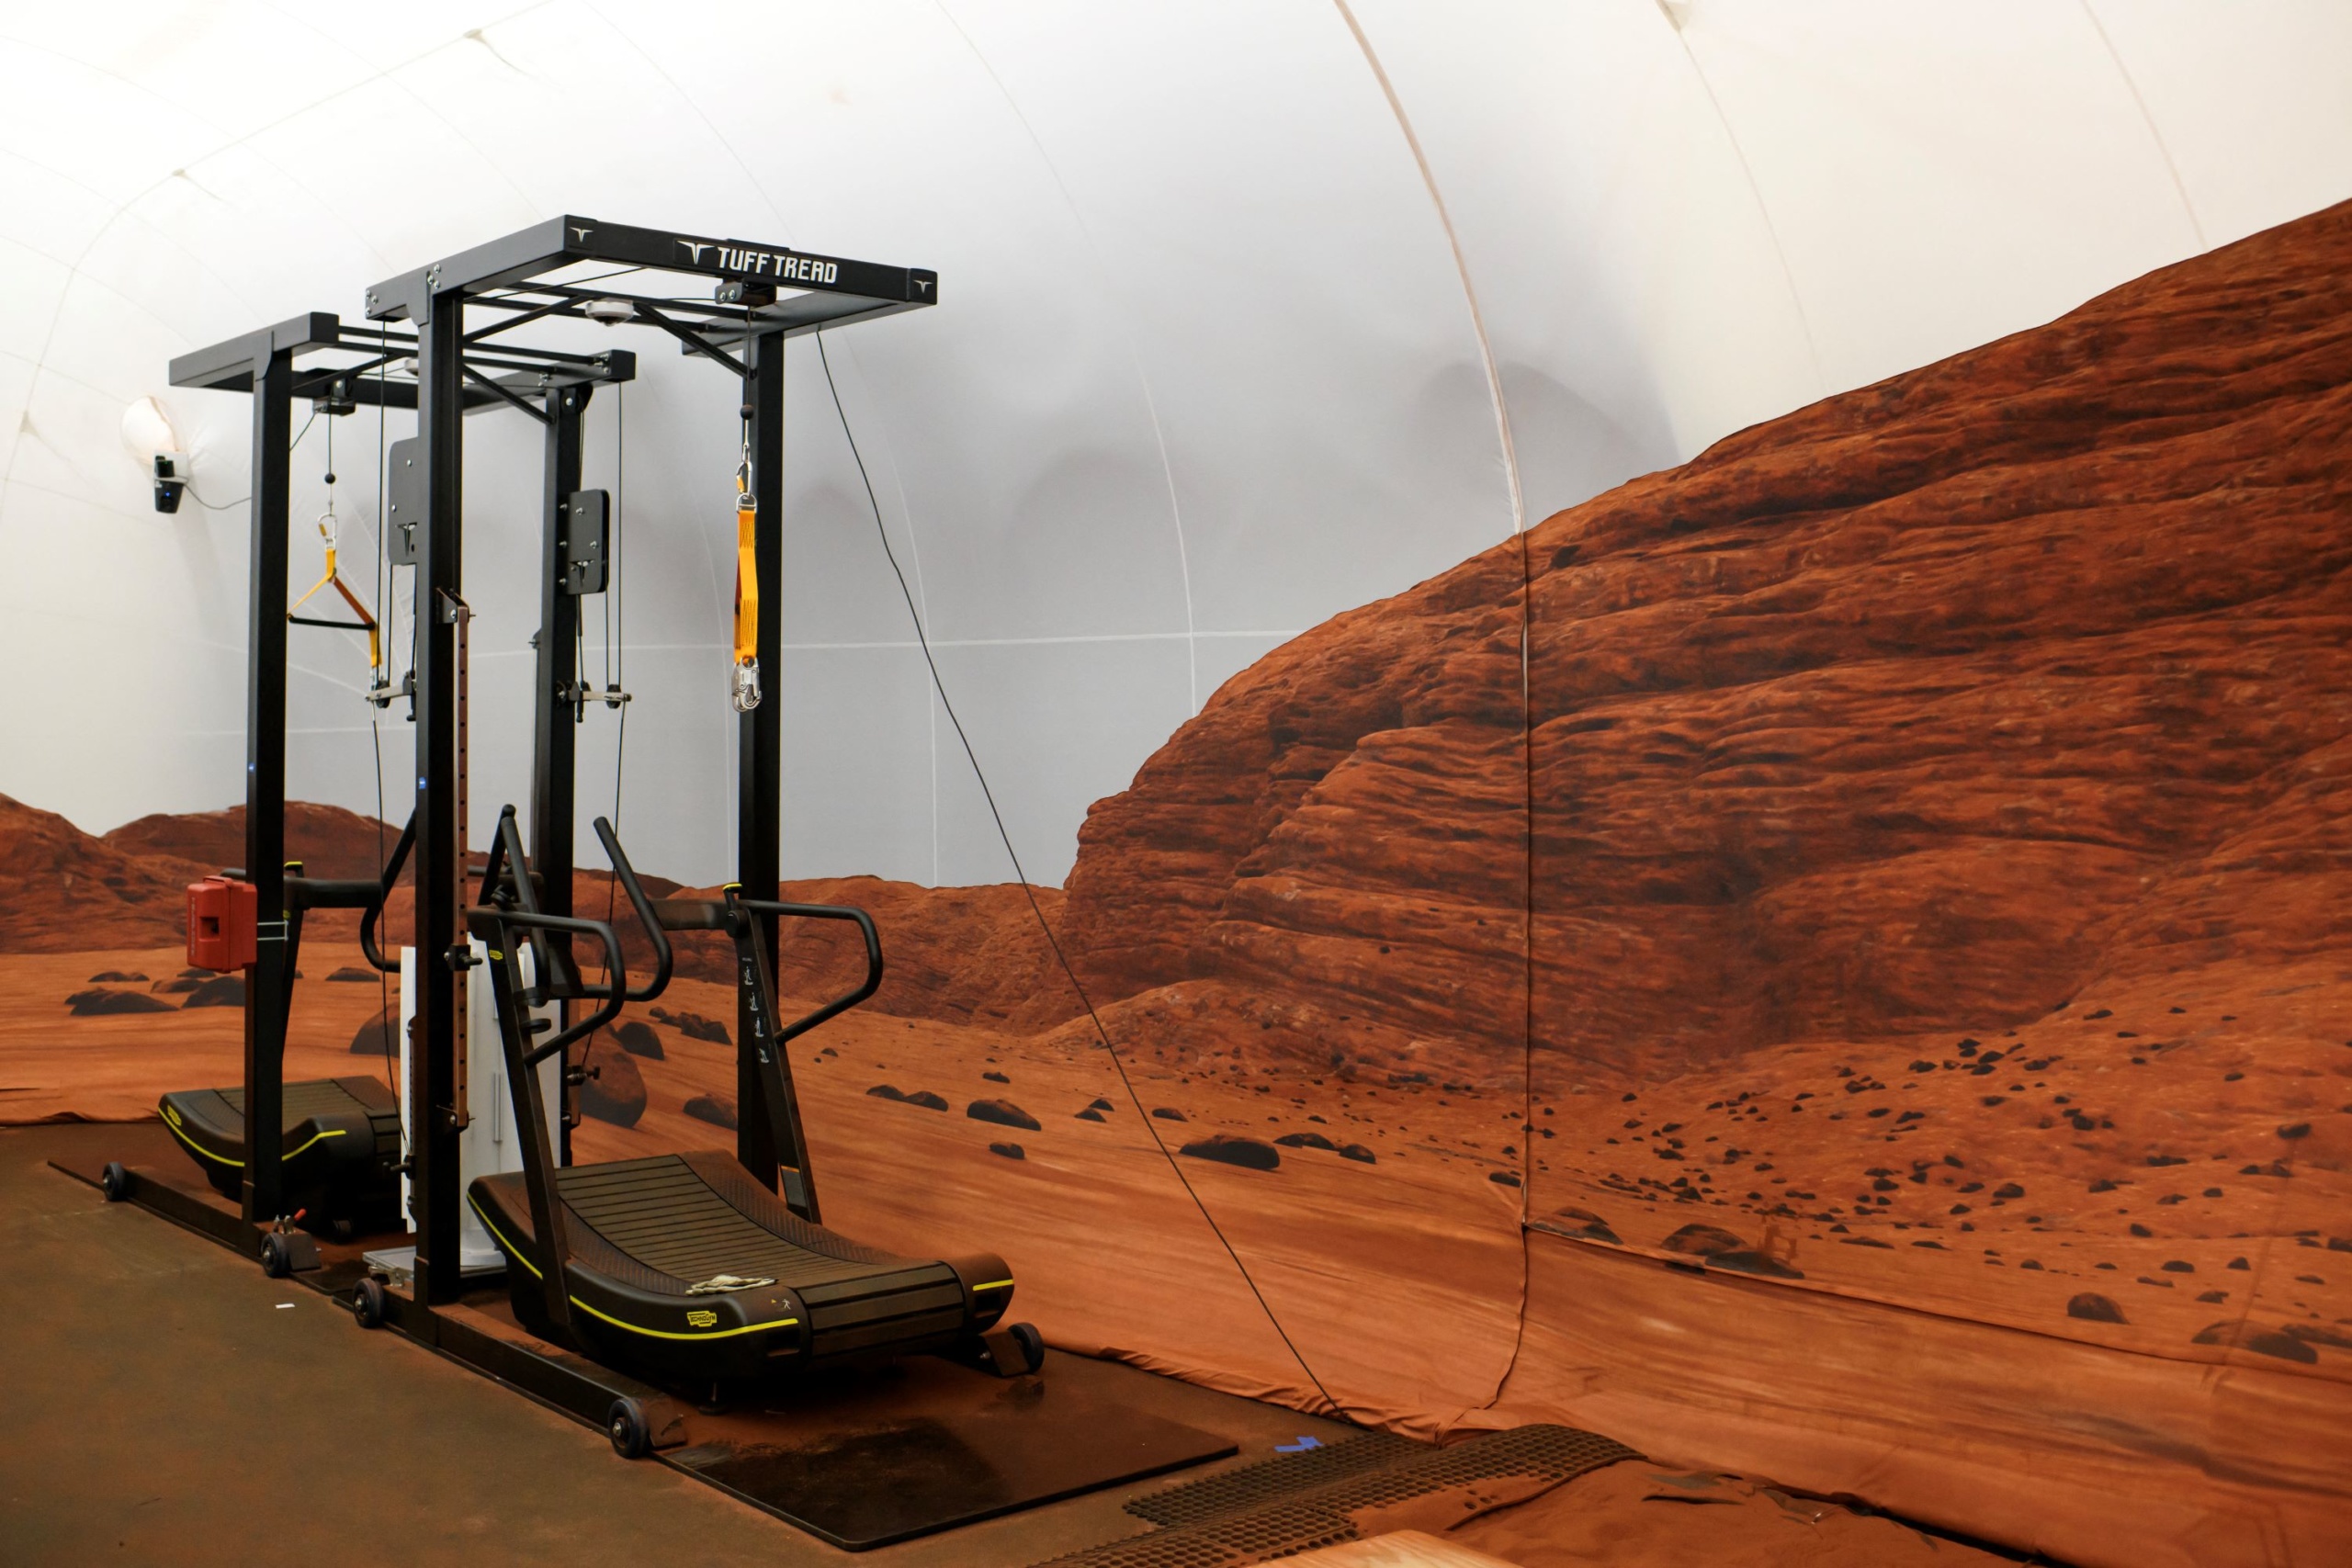 A NASA Mars-szimulációs központja